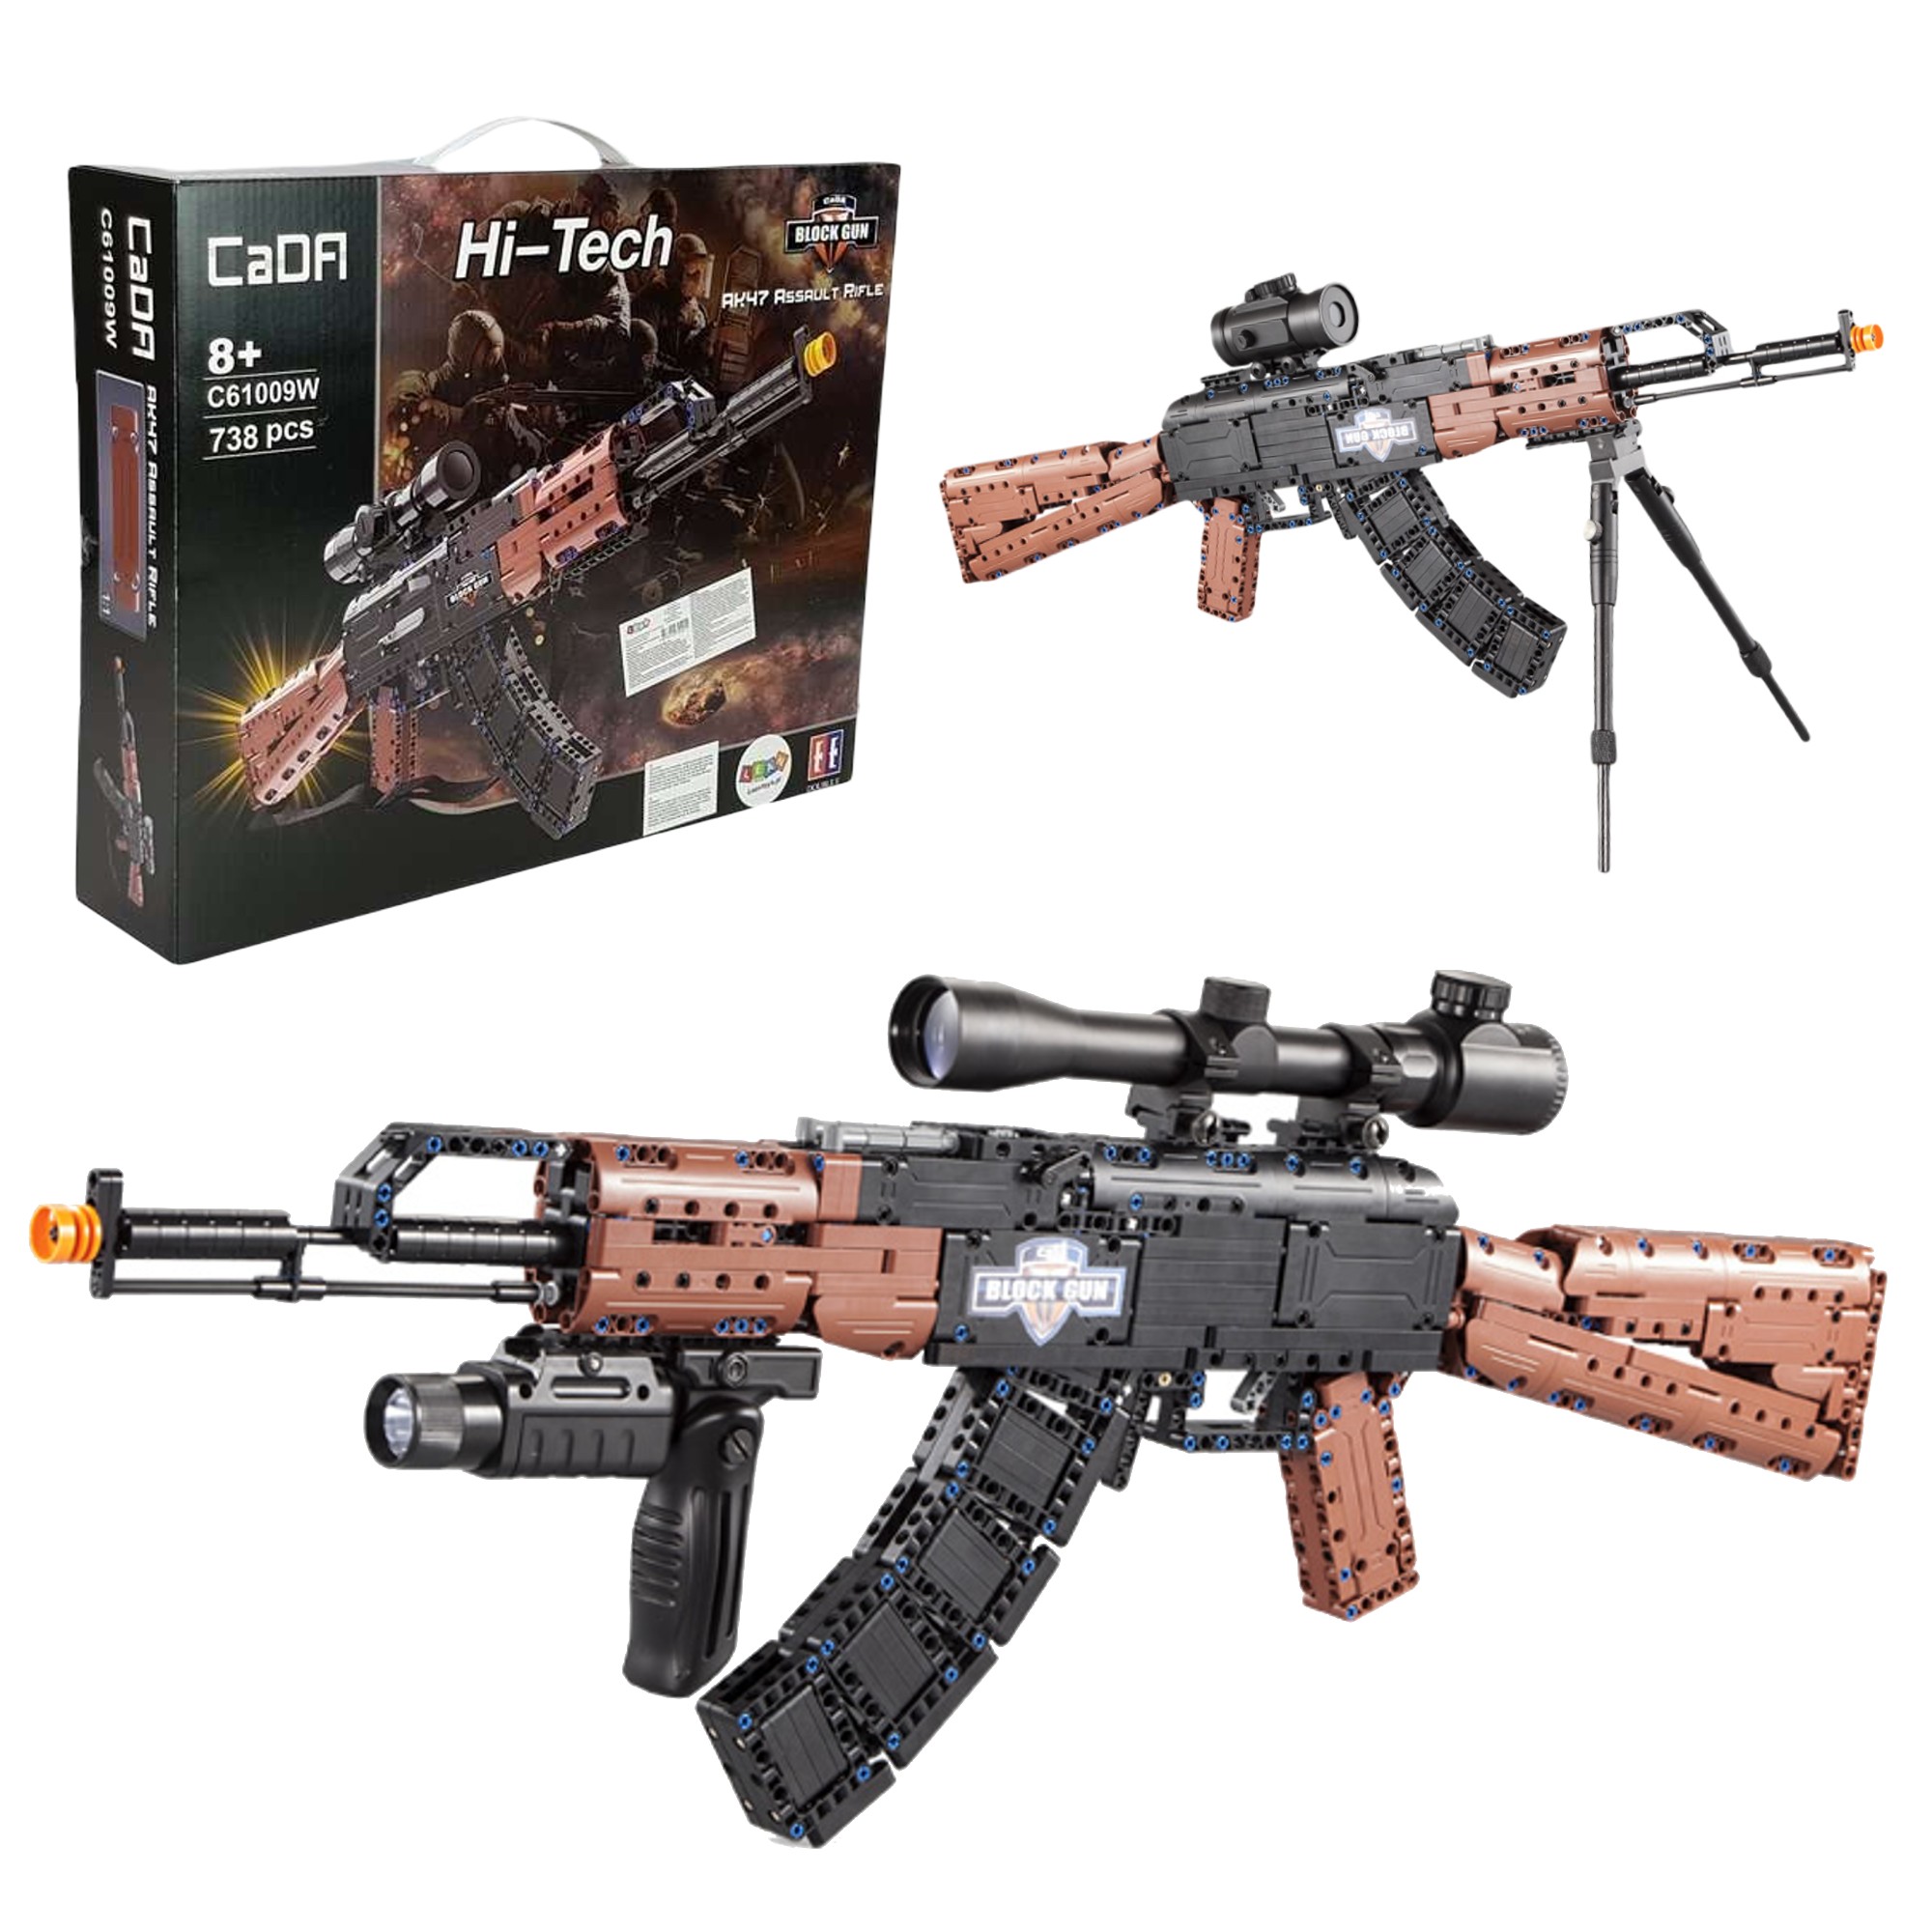 Klocki Konstrukcyjne CaDA bro karabin AK-47 Kalashnikov realistyczny Assault Rifle 738 elementw 8+